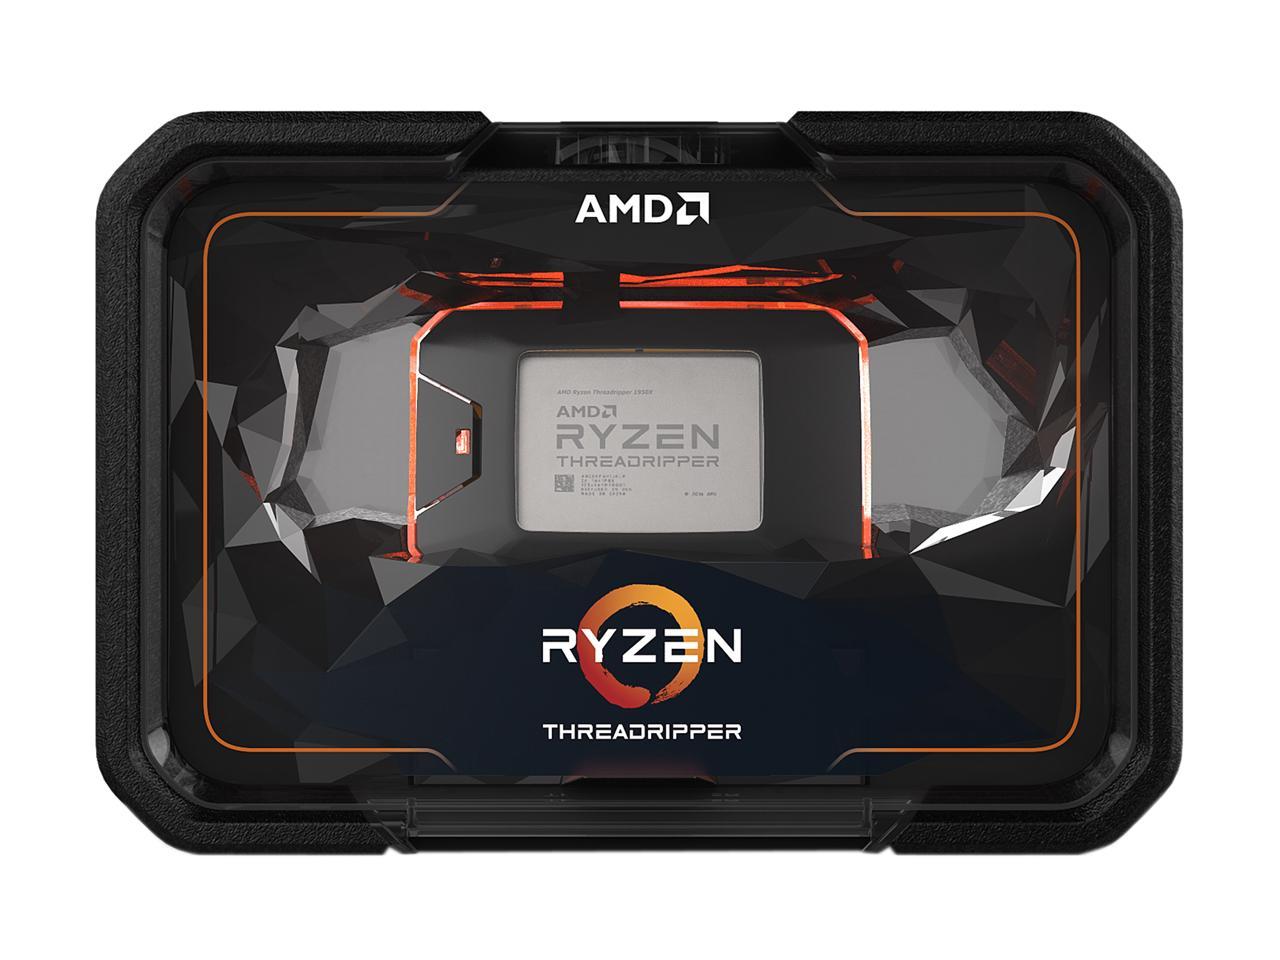 AMD 2nd Gen Ryzen Threadripper 2950X, 16-Core, 32-Thread, 4.4 GHz Max Boost (3.5 GHz Base), Socket sTR4 180W YD295XA8AFWOF Desktop Processor